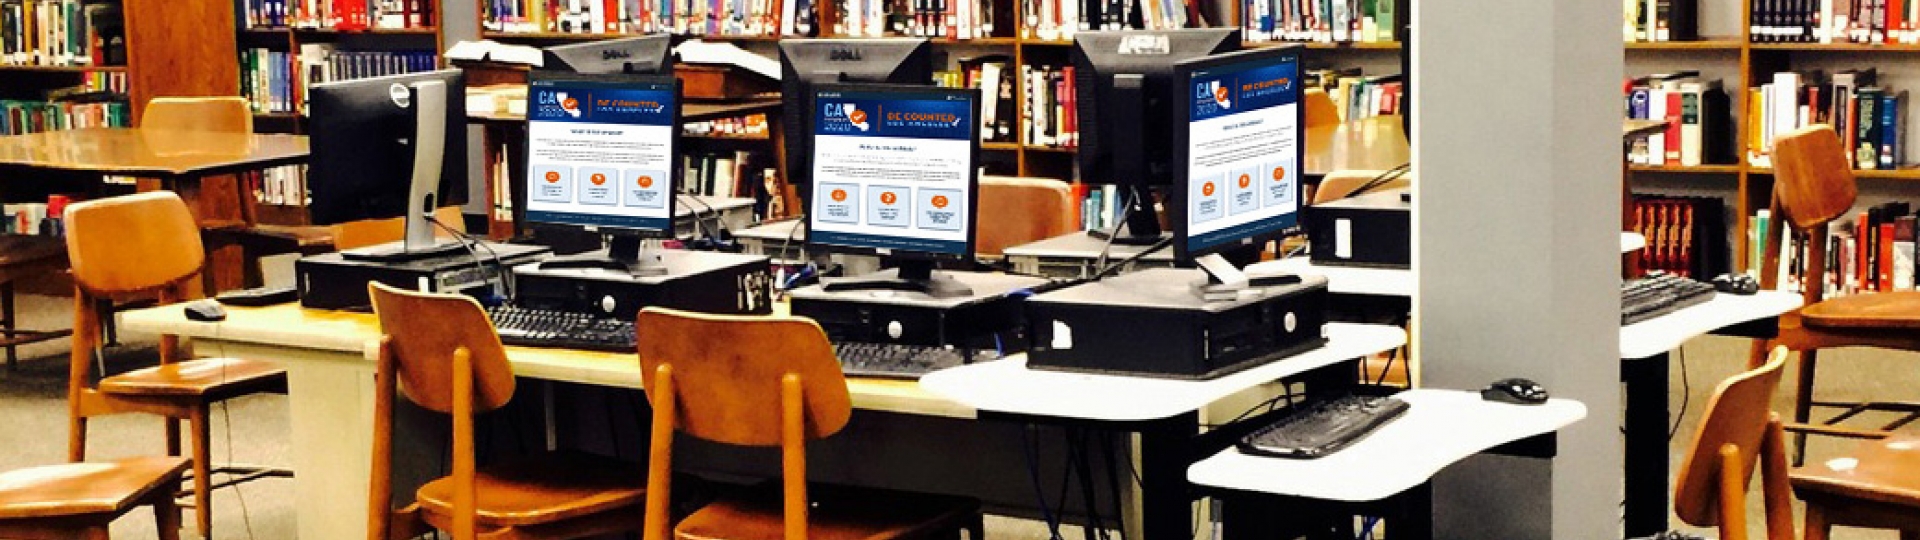 横幅图案：图书馆背景里有多台桌上型电脑，电脑显示着加州地图标志图案，文本为 Census 2020 Be Counted Los Angeles。